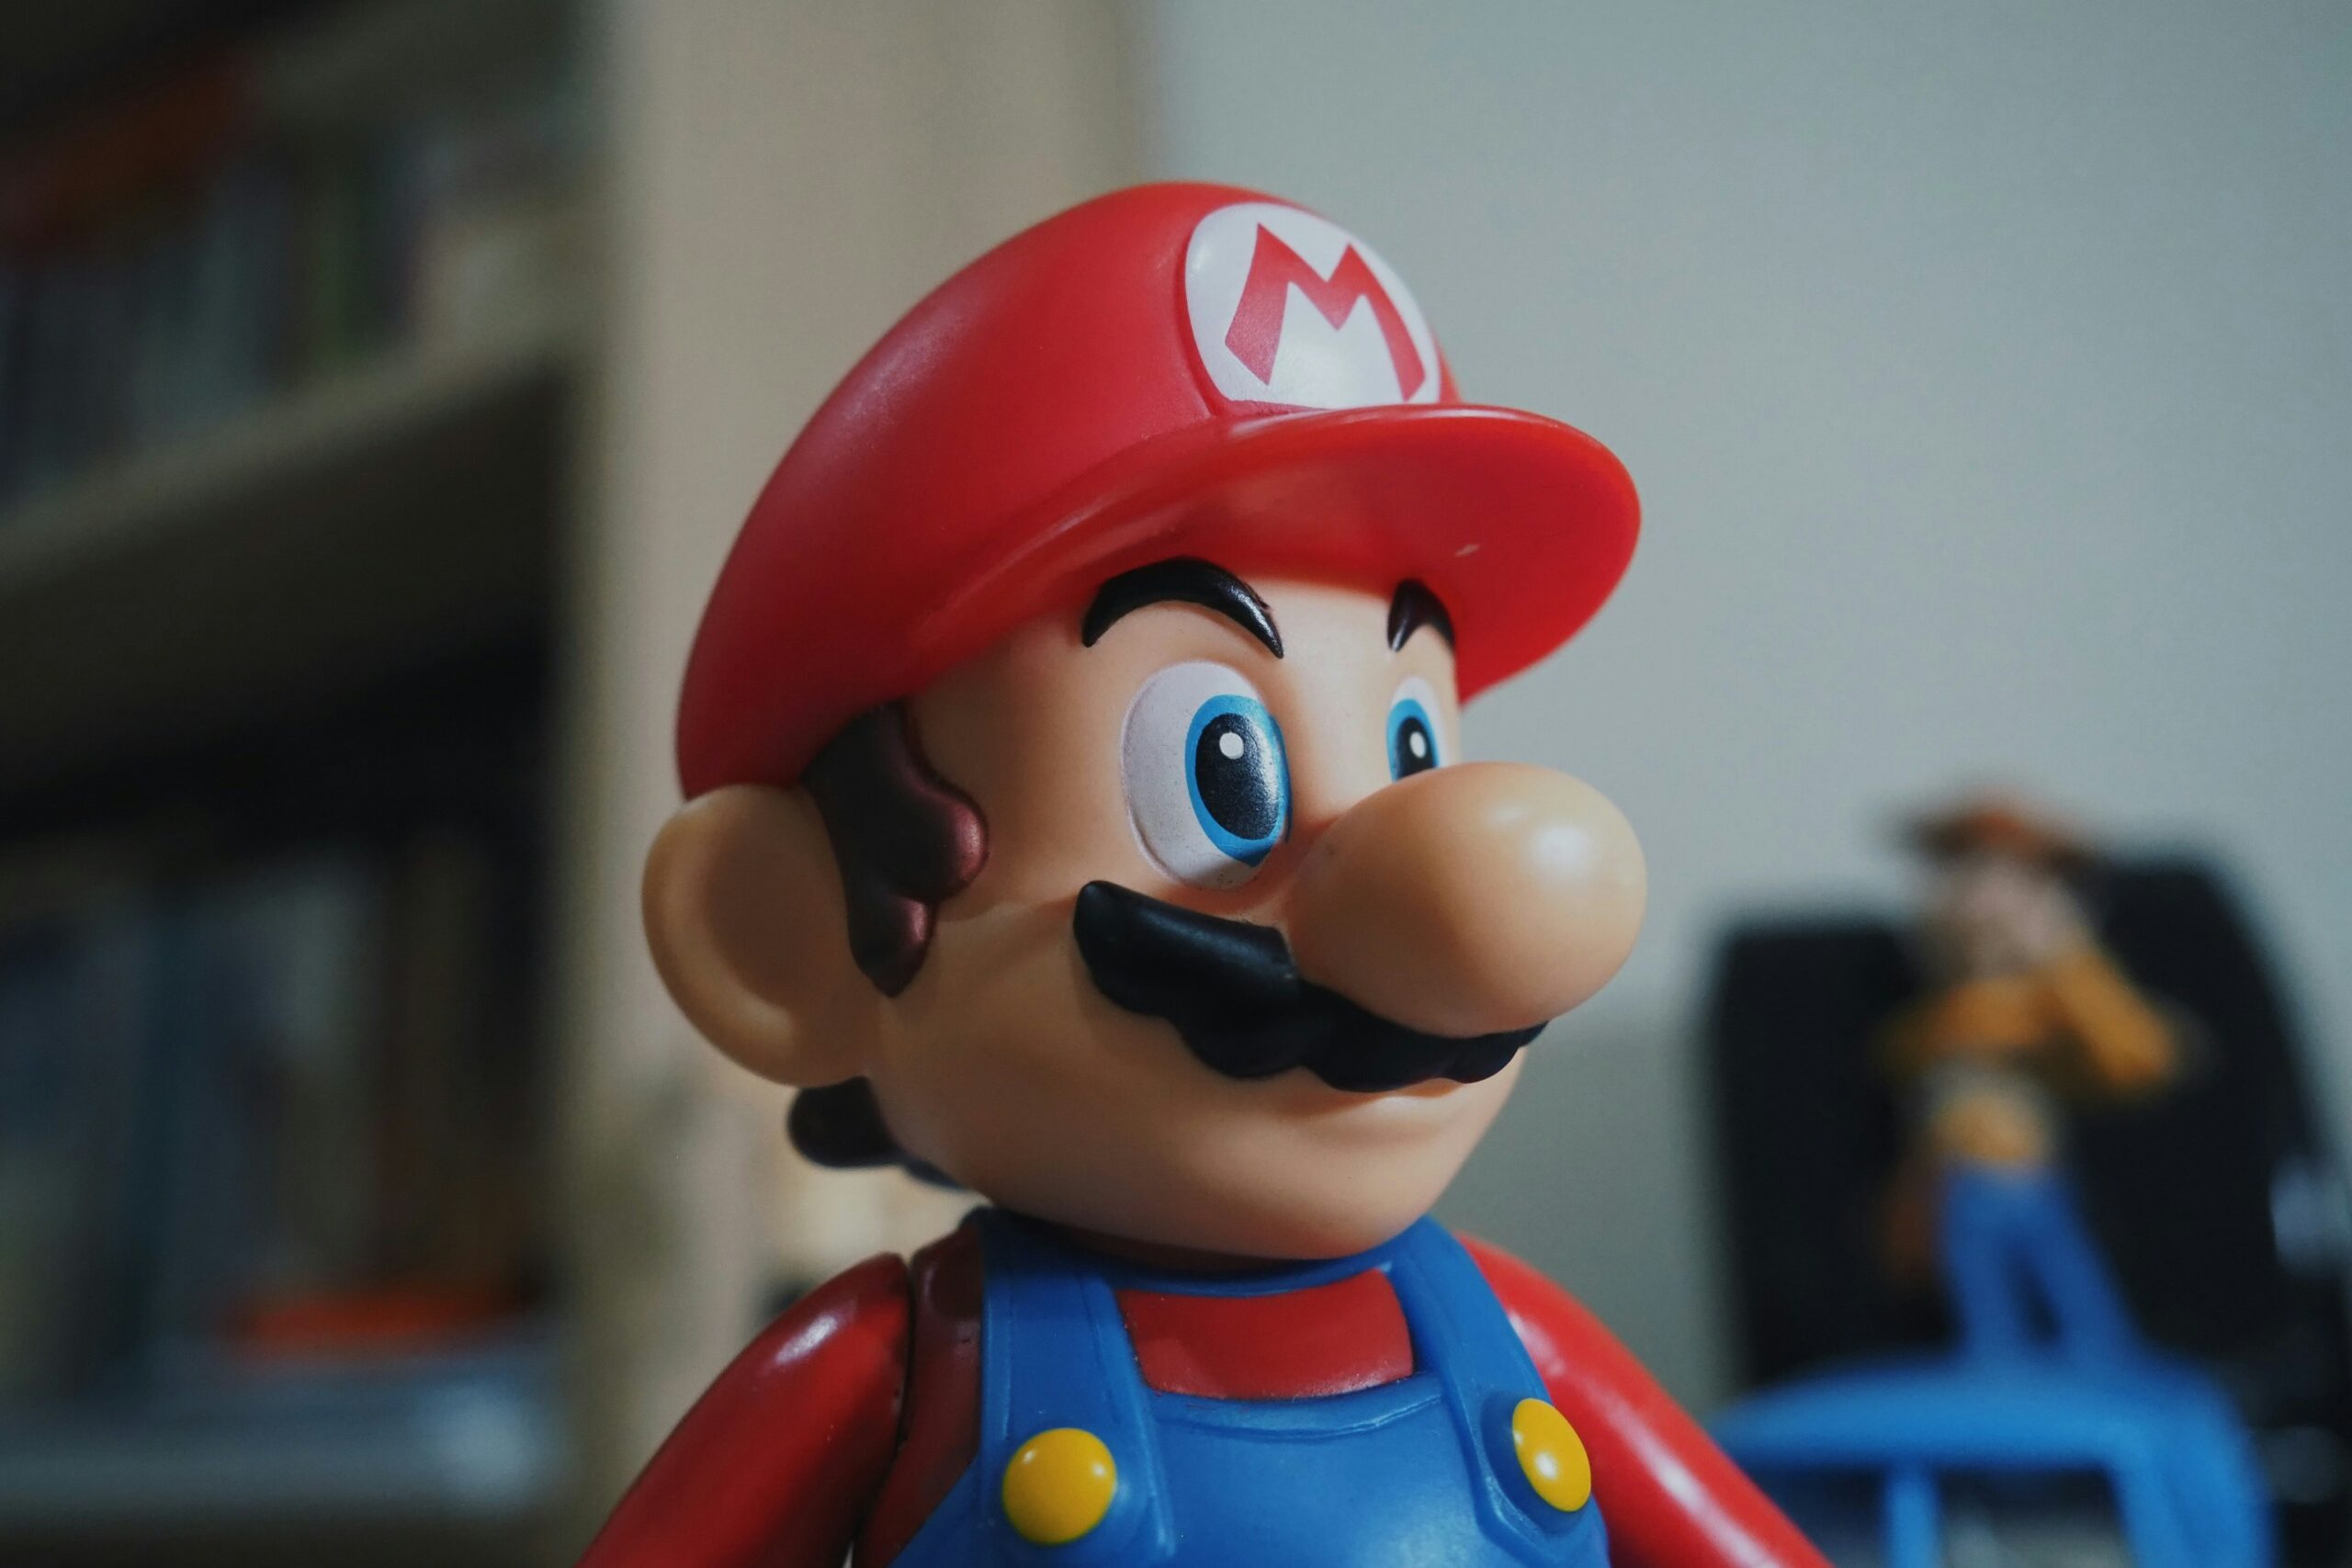 Szeretnéd végigcsinálni a Mario Bros videójátékokat? Van egy rossz hírünk: a matematikusok szerint lehetetlen